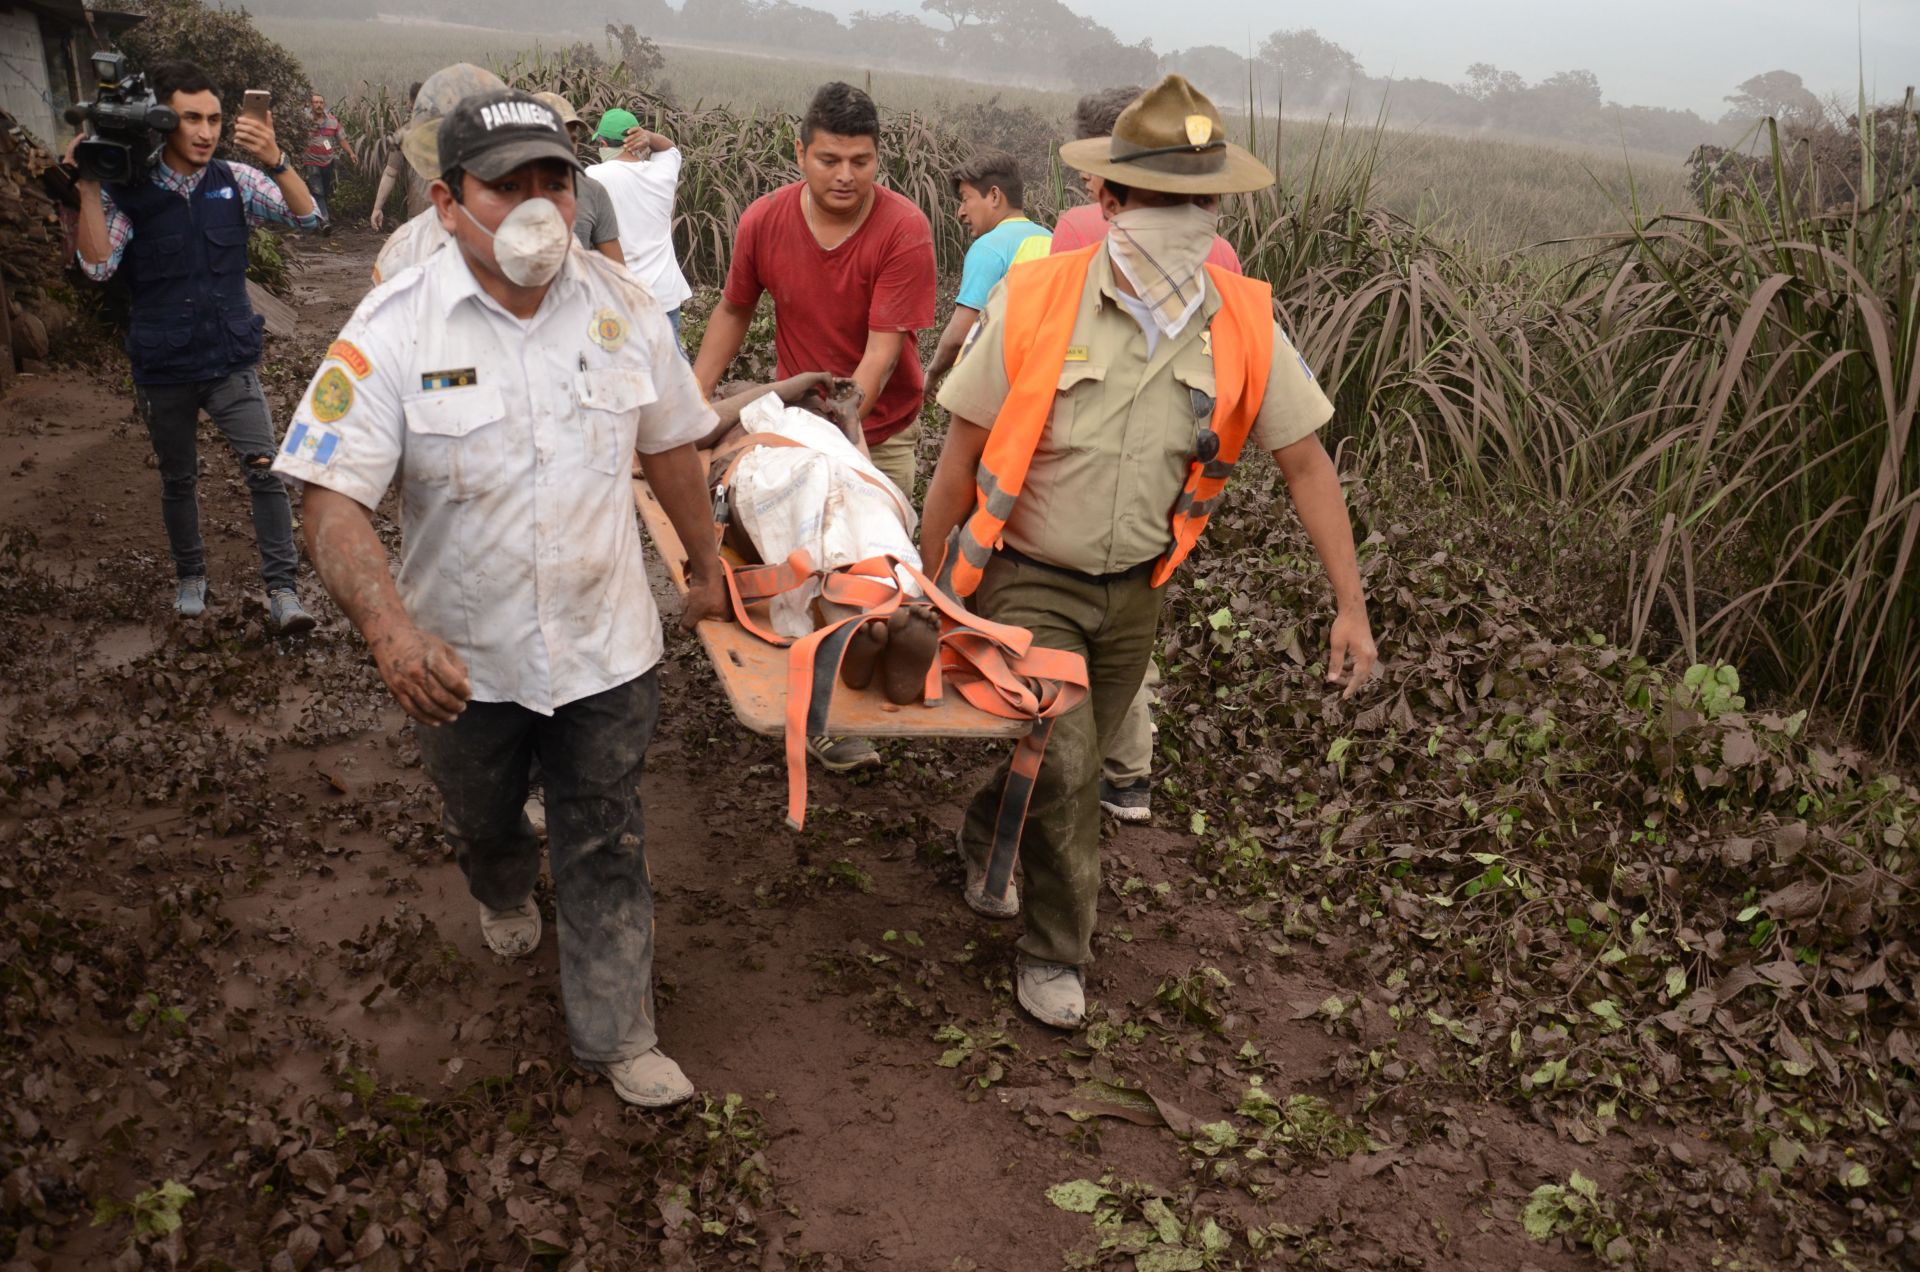 La cifra de heridos por la erupción del volcán de Fuego en Guatemala aumento de 20 a 46 y la de muertos se mantiene en 25